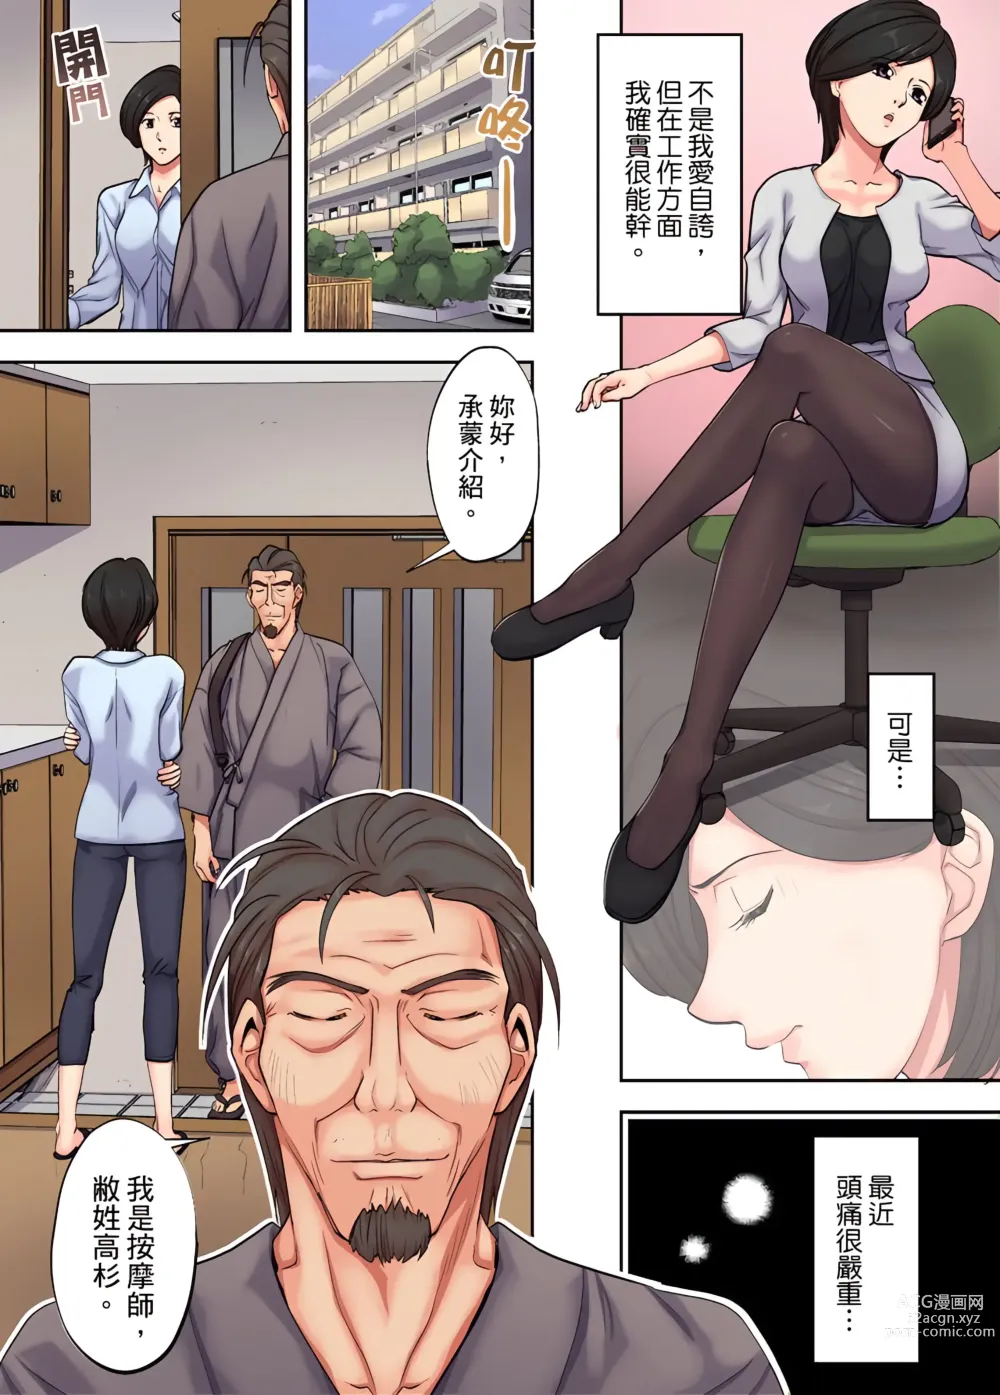 Page 30 of manga 人妻專攻！超猛按摩師的敏感穴位按摩術～不要連裡面的穴道一起刺激啦！1-34話